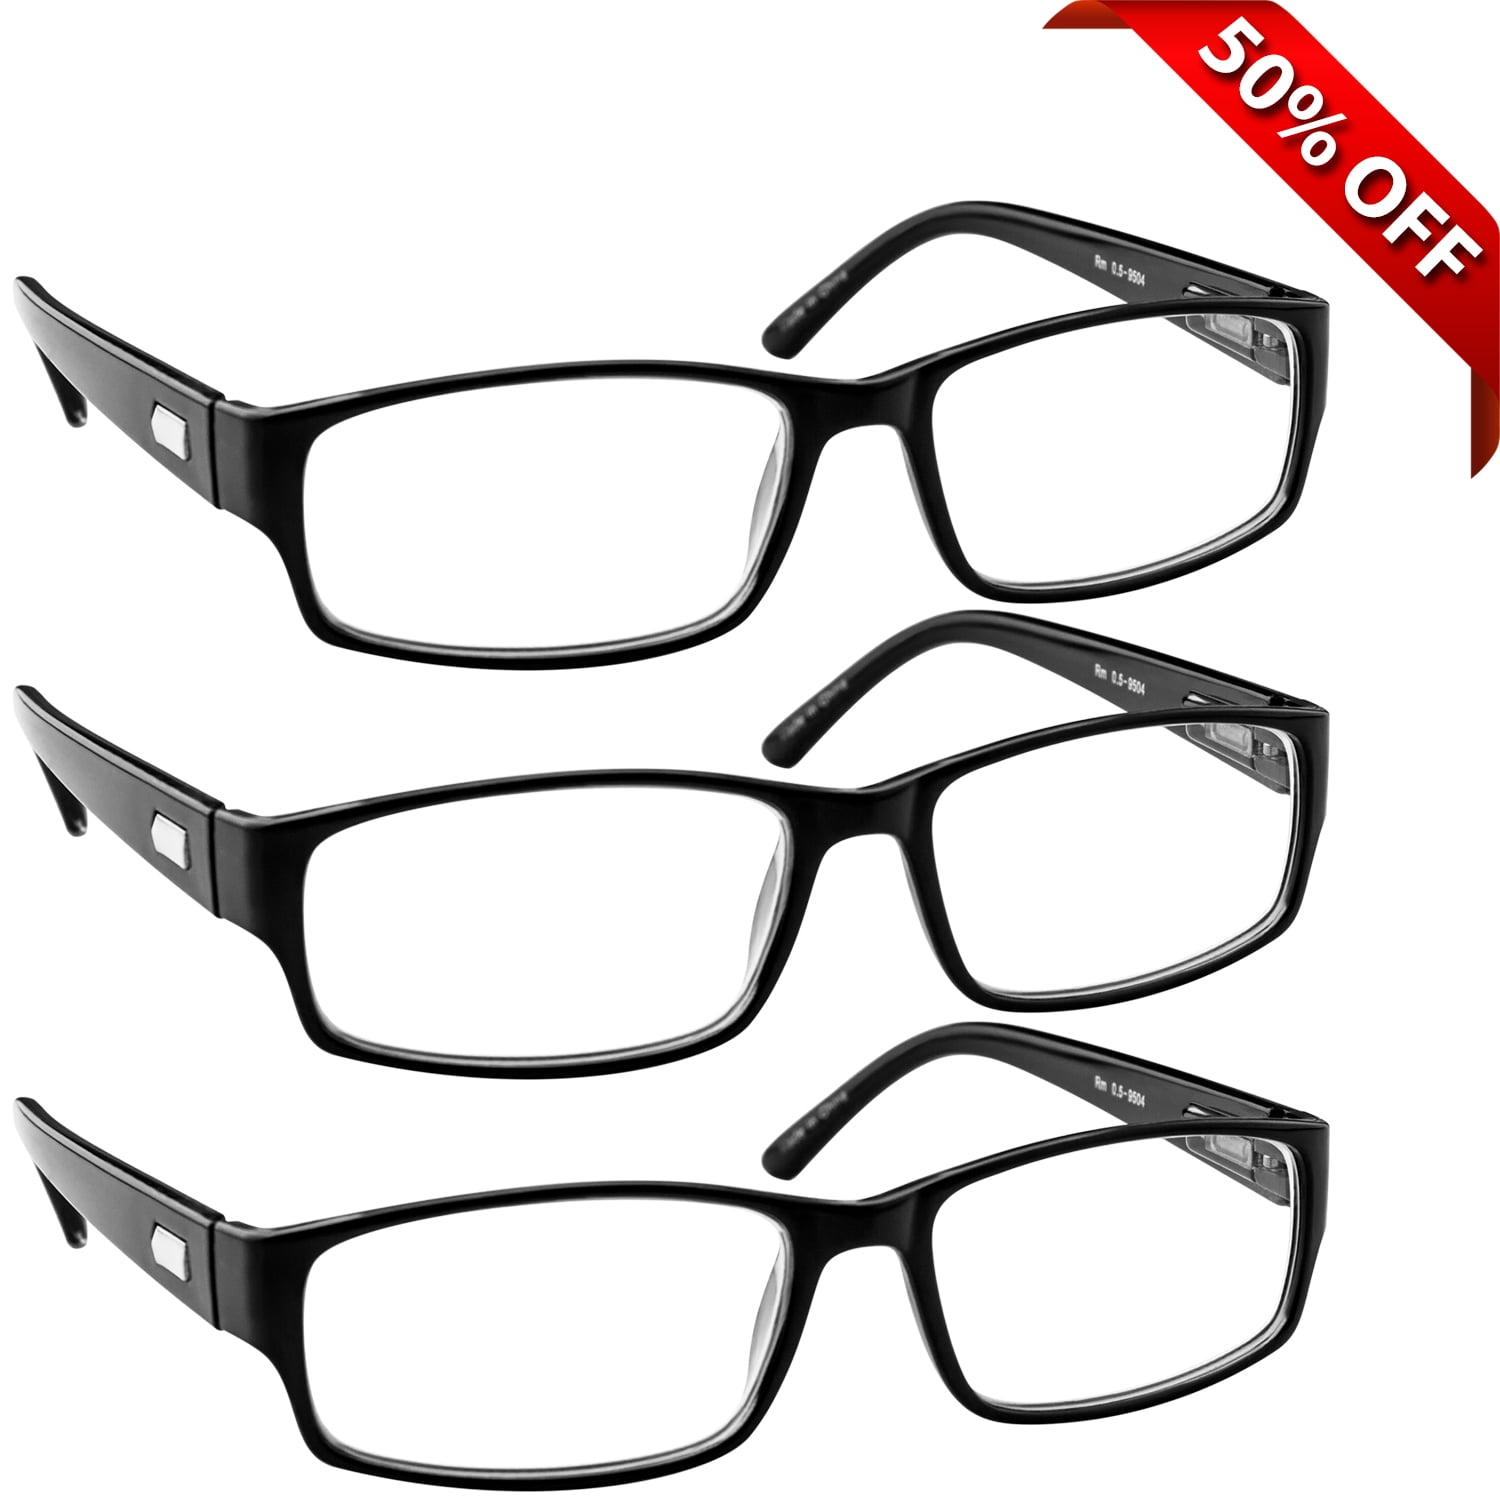 Reading Glasses 3 75 3 Pack Of Readers For Men And Women 3 Black